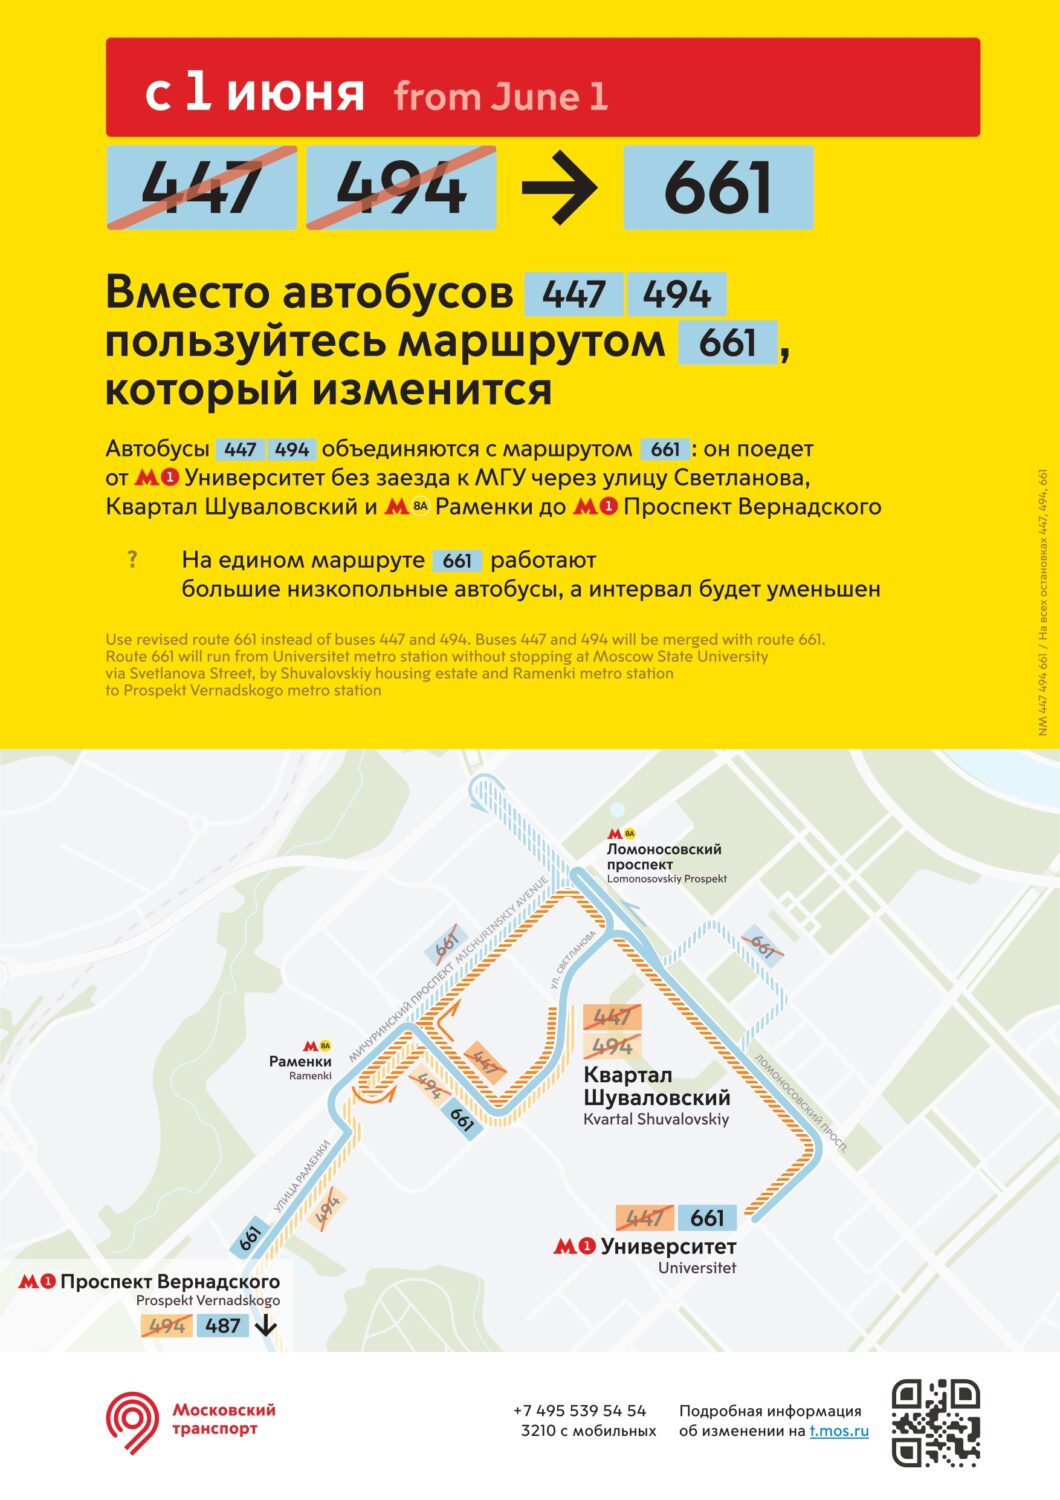 Почти 40 автобусных маршрутов Москвы изменятся с 1-3 июня